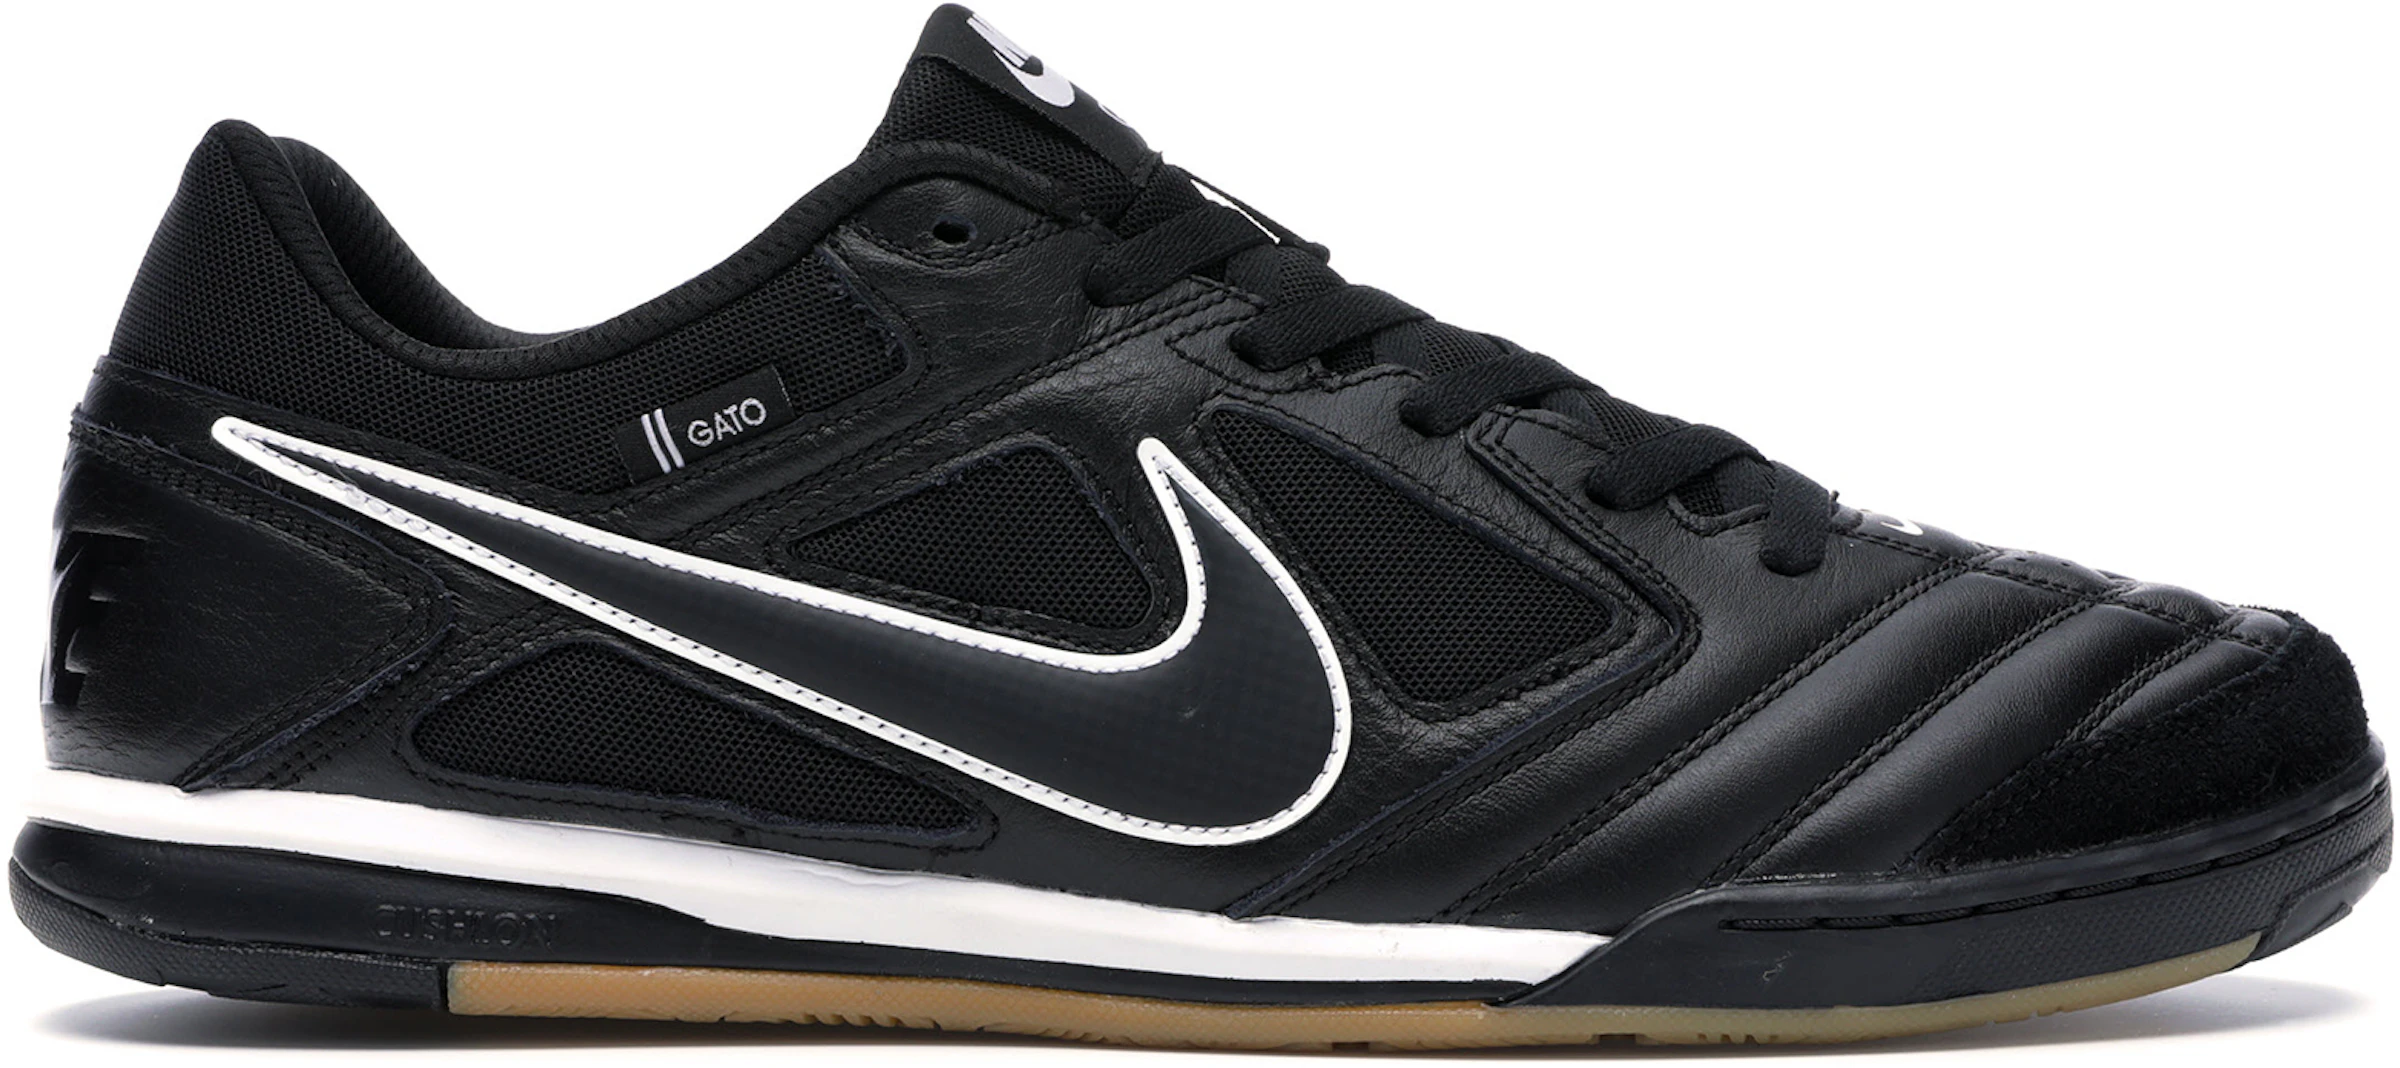 Nike SB Gato Black - AT4607-001 -